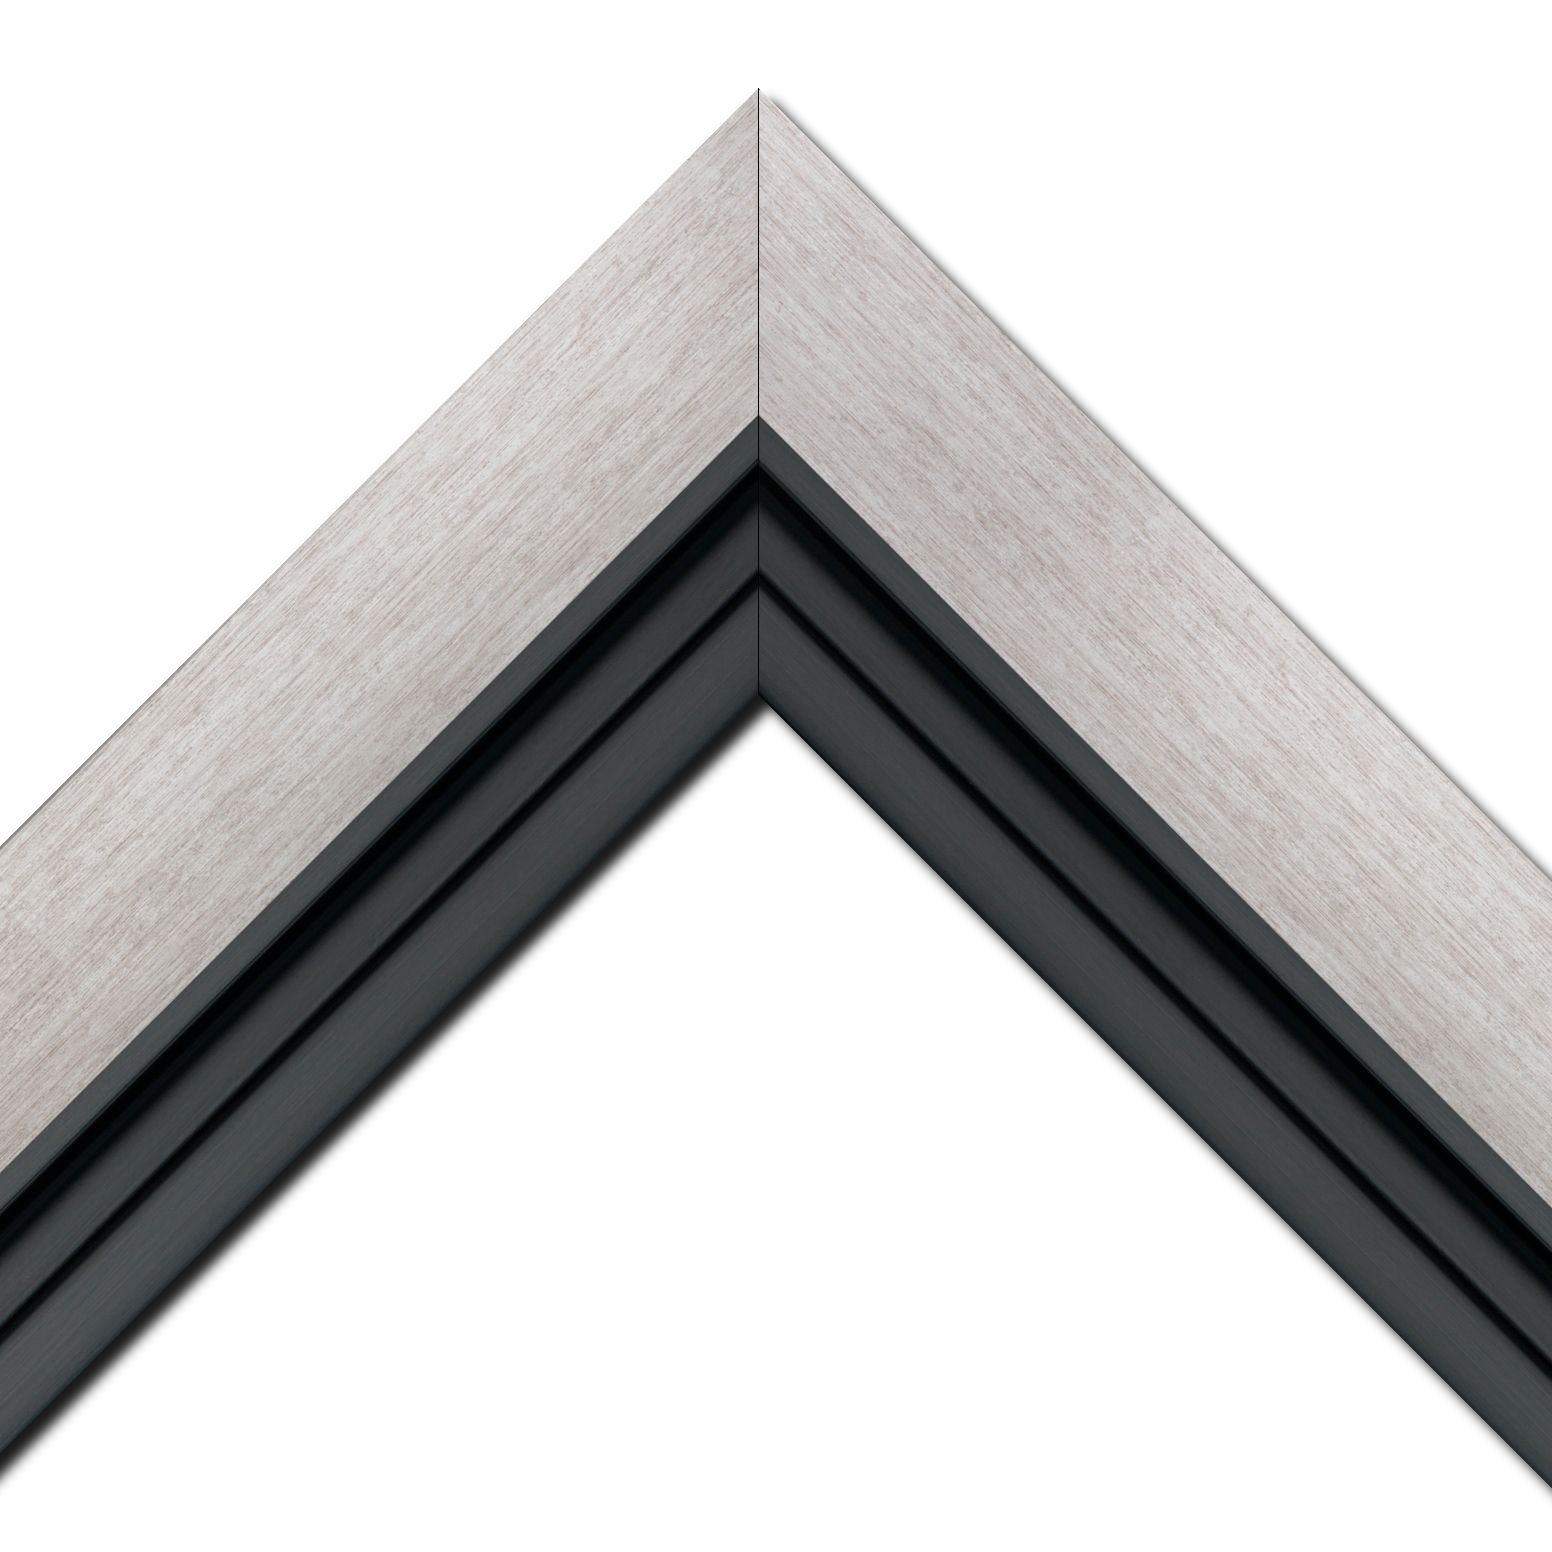 Baguette bois profil plat largeur 6cm couleur argent contemporain satiné haut de gamme + bois caisse américaine profil escalier largeur 4.5cm noir mat (spécialement conçu pour les châssis d'une épaisseur jusqu’à 2.5cm ) largeur totale du cadre 9.6cm